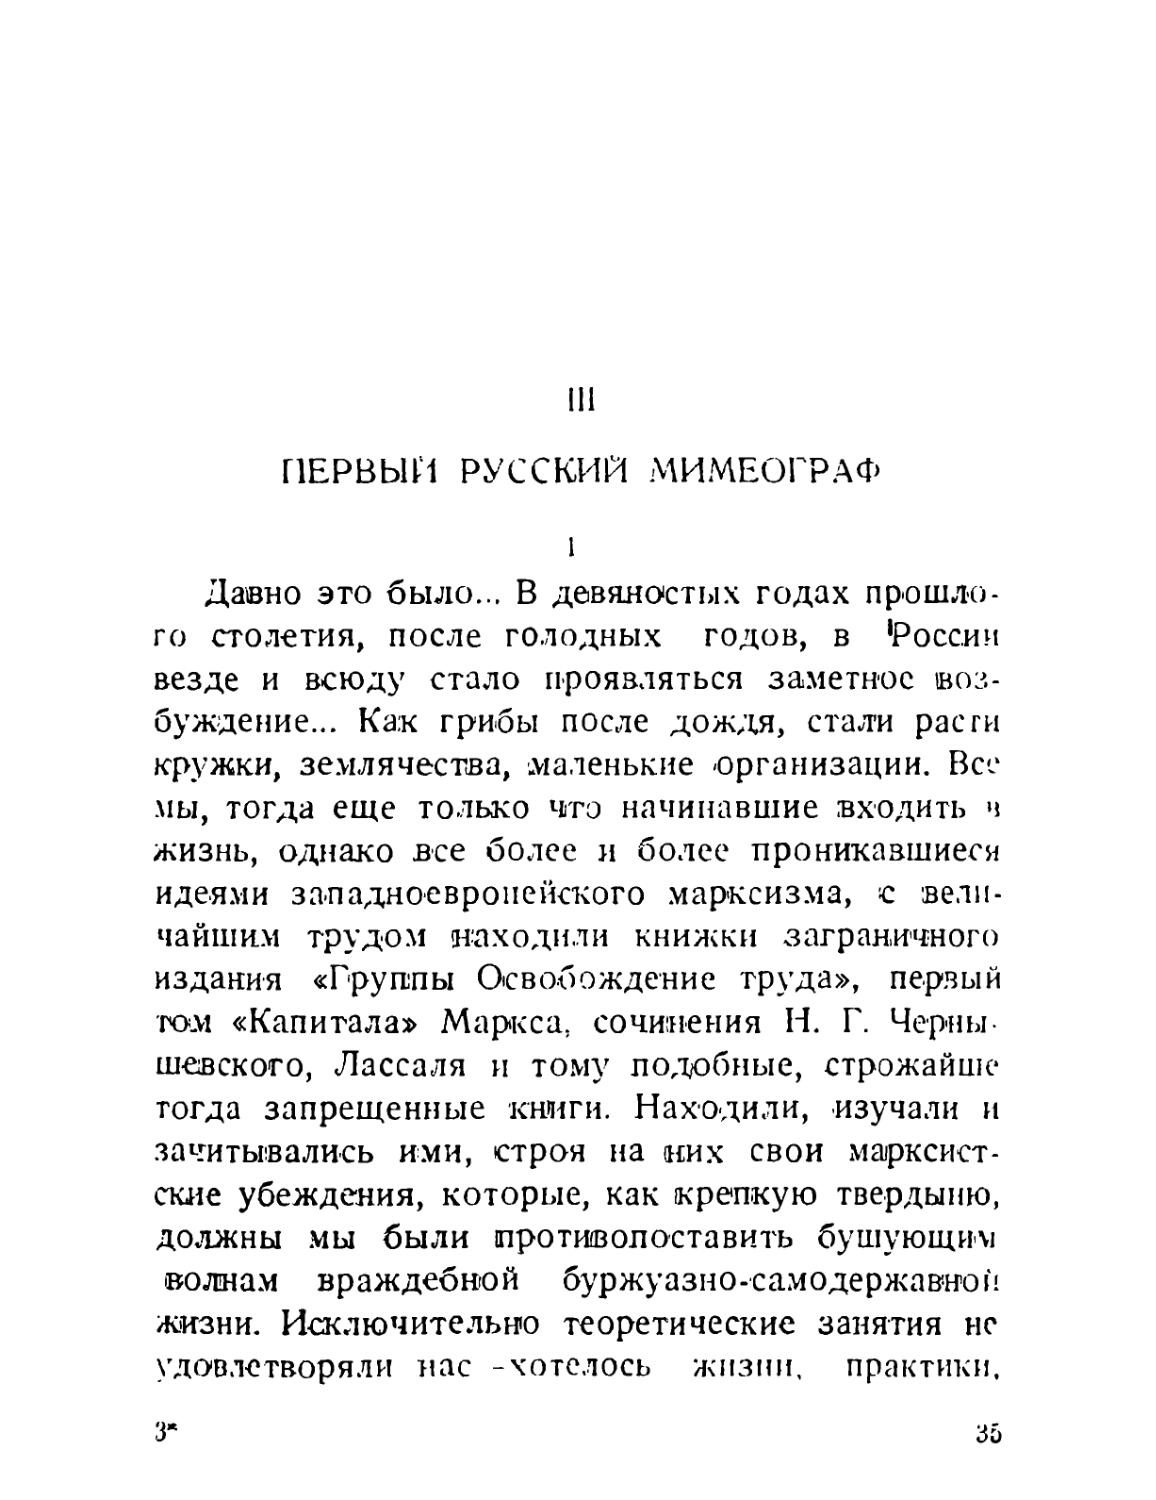 III. Первый русский мимеограф